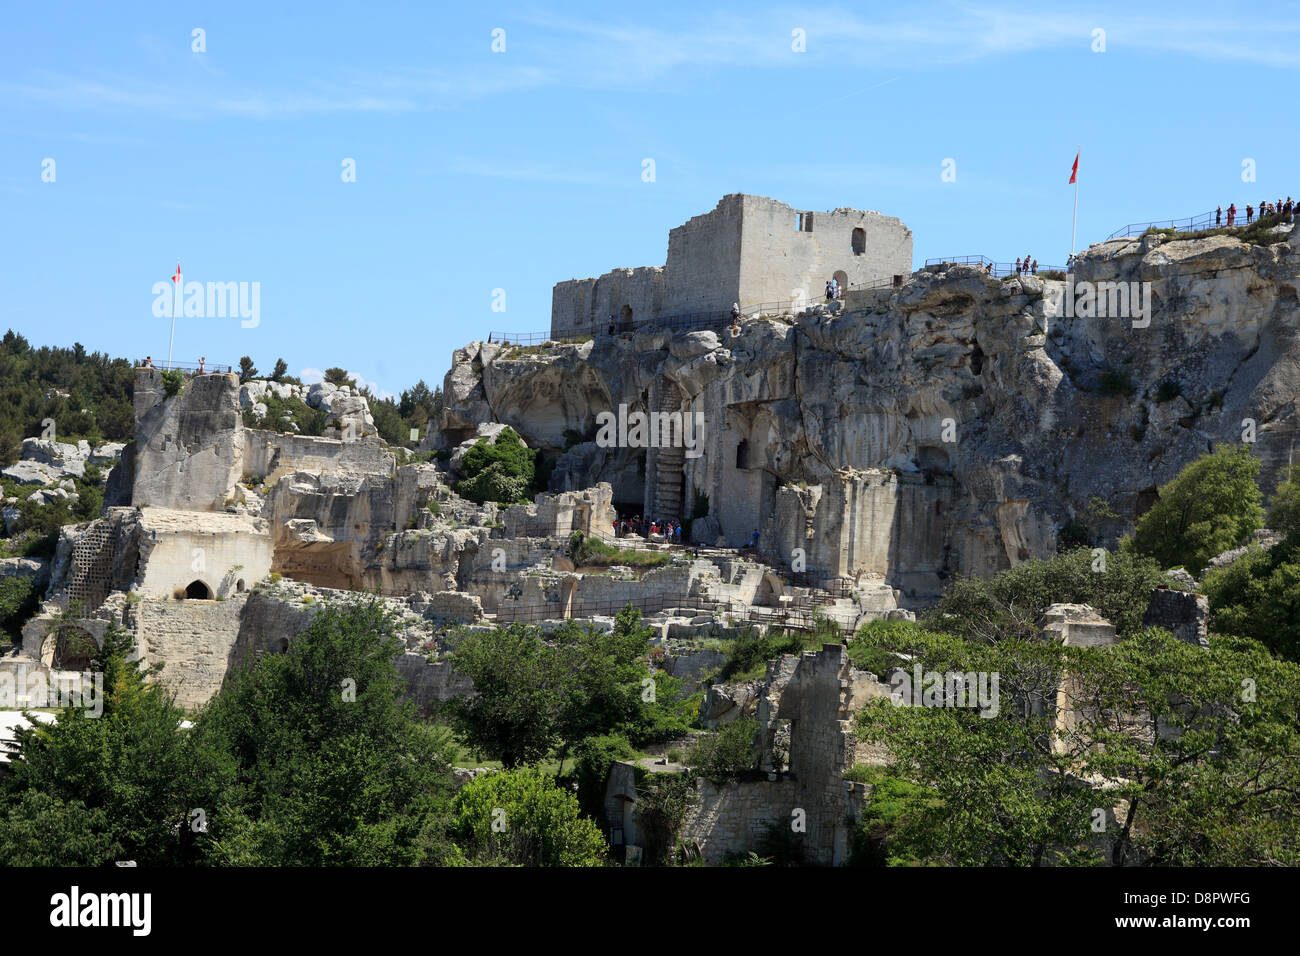 Les ruines du château médiéval du village des Baux de Provence dans les Alpilles, en Provence. Banque D'Images